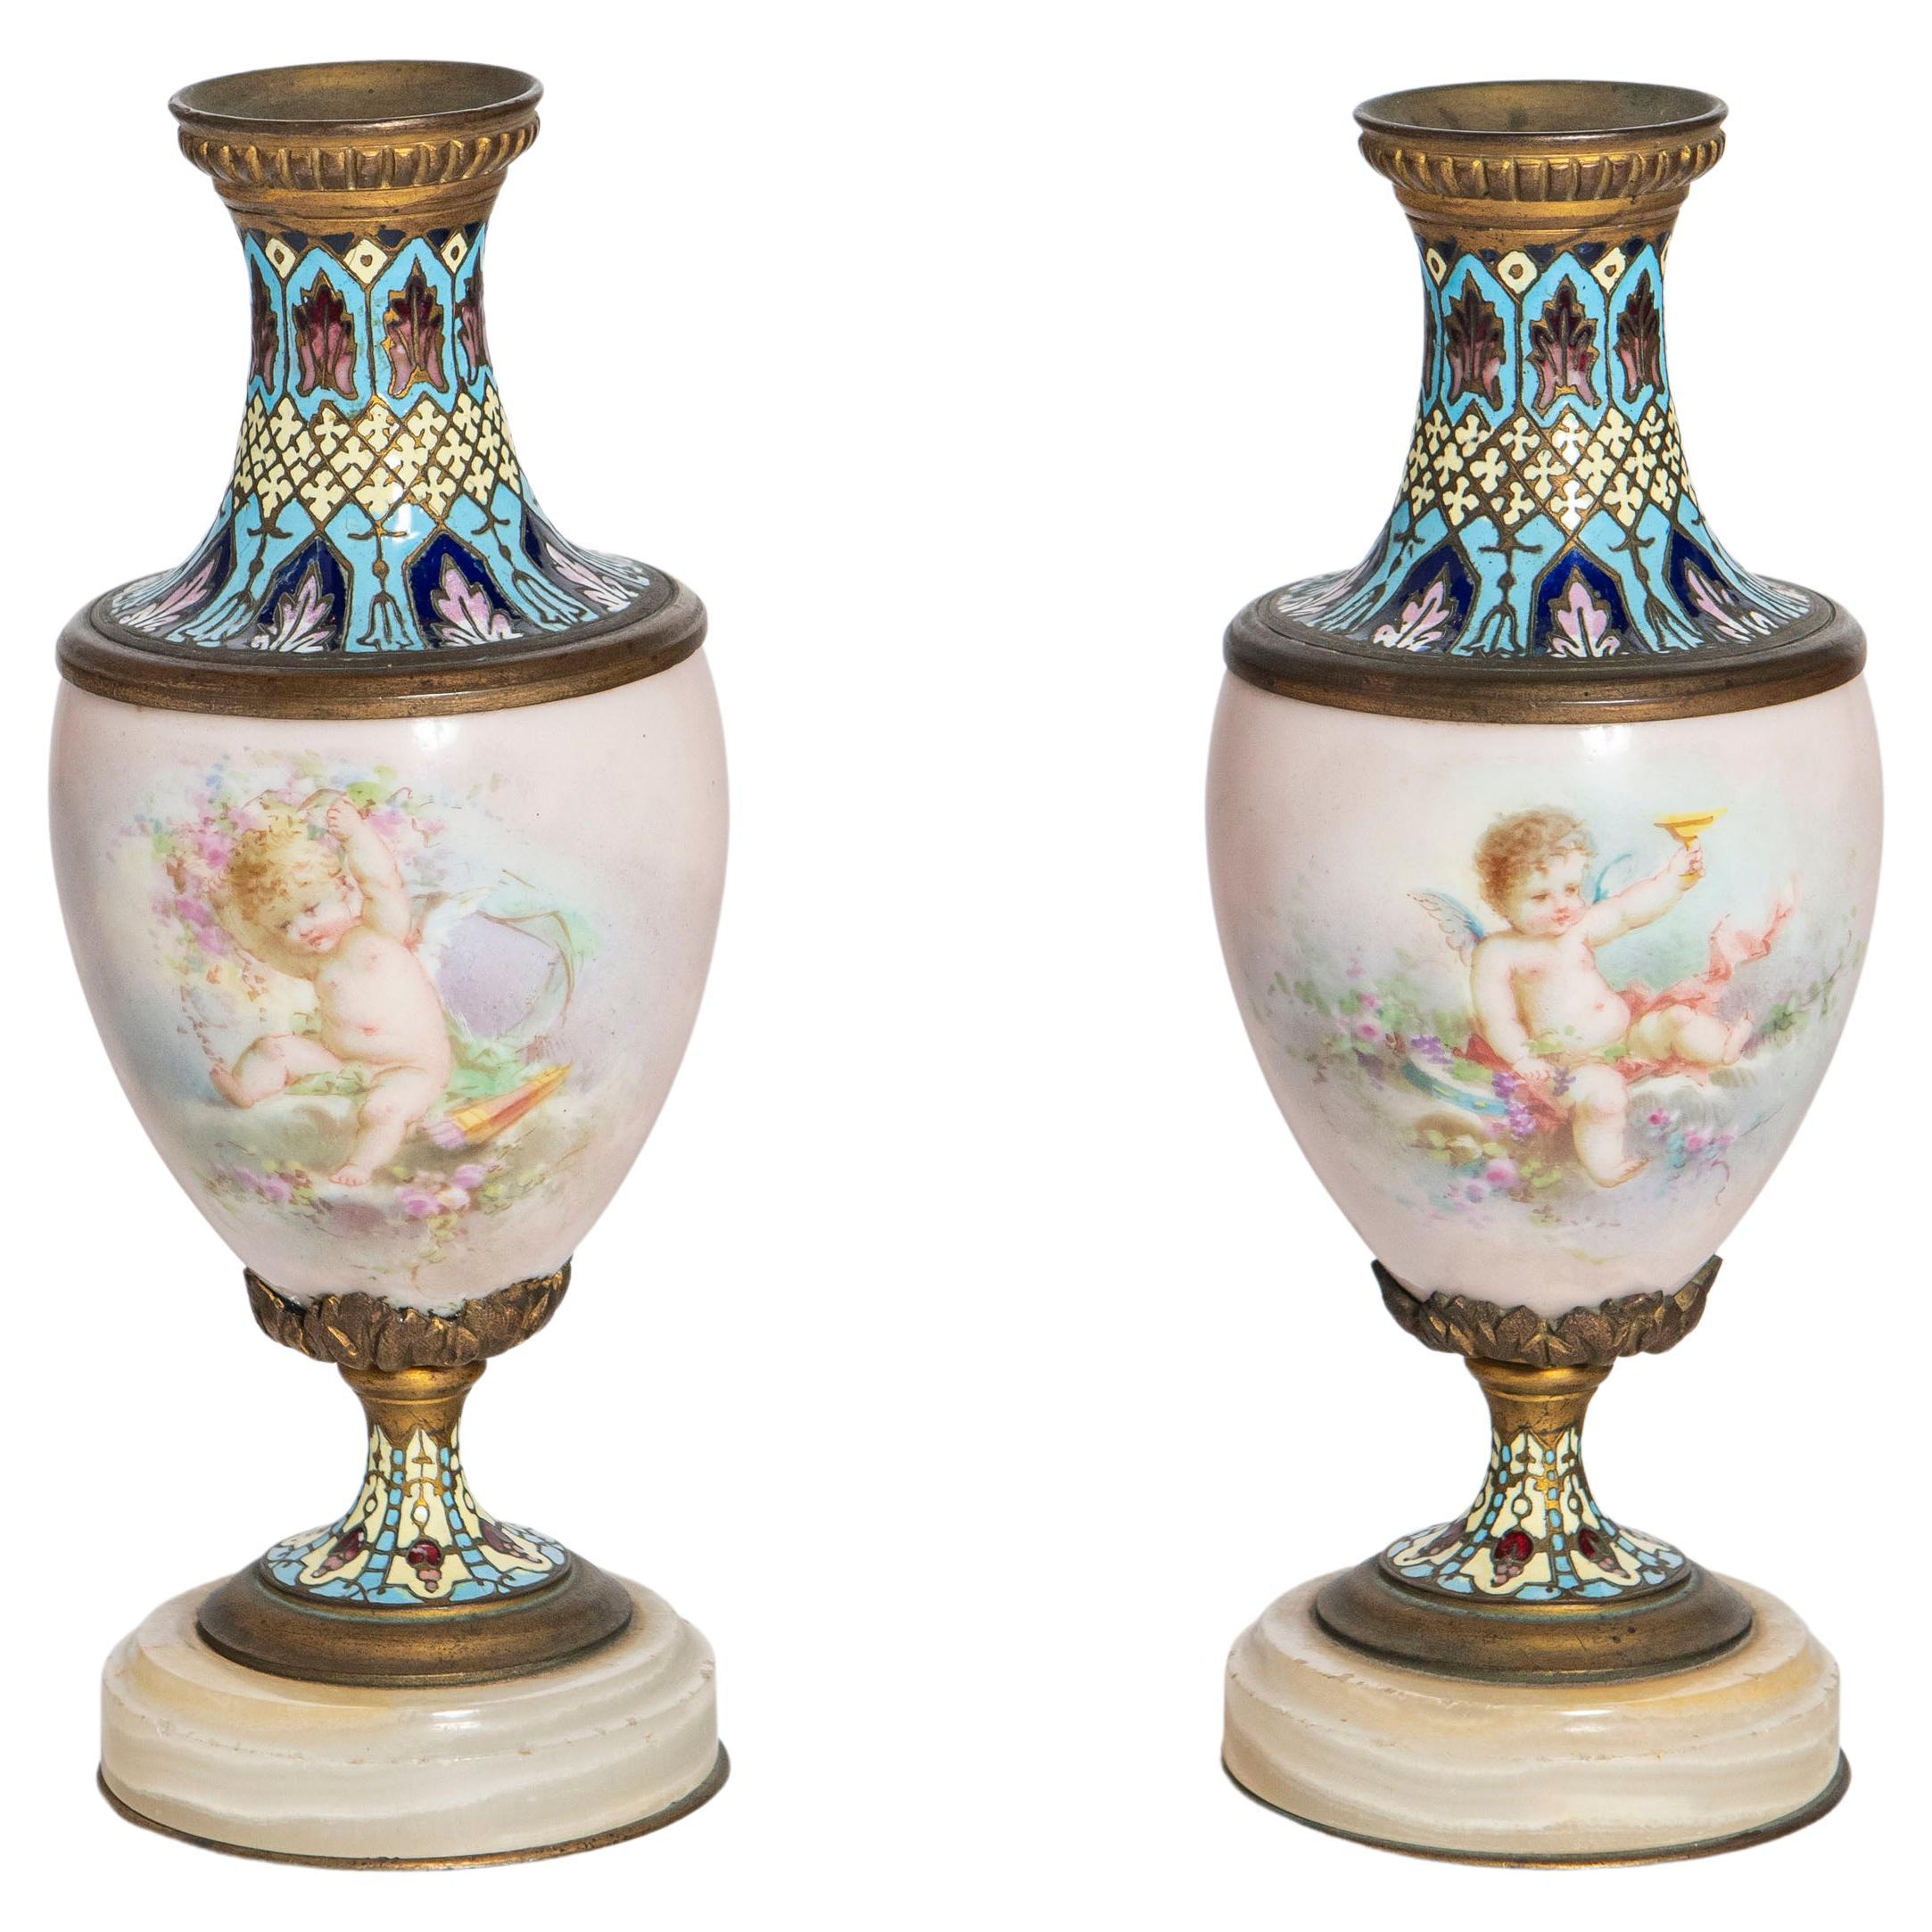 Paire de vases en porcelaine, cloisonné, marbre et bronze. France, datant d'environ 1900.